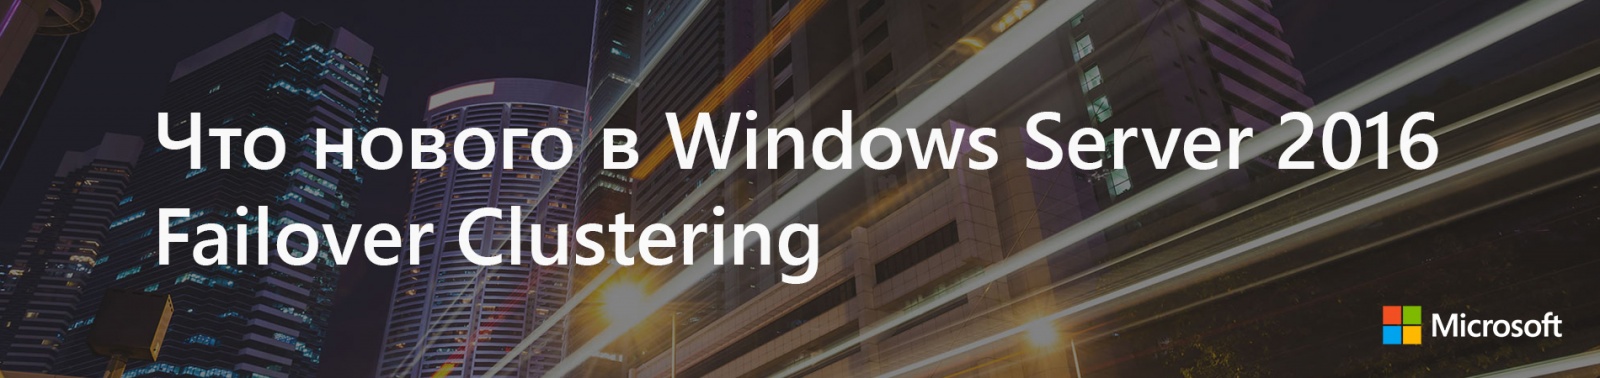 Что нового в Windows Server 2016 Failover Clustering - 1